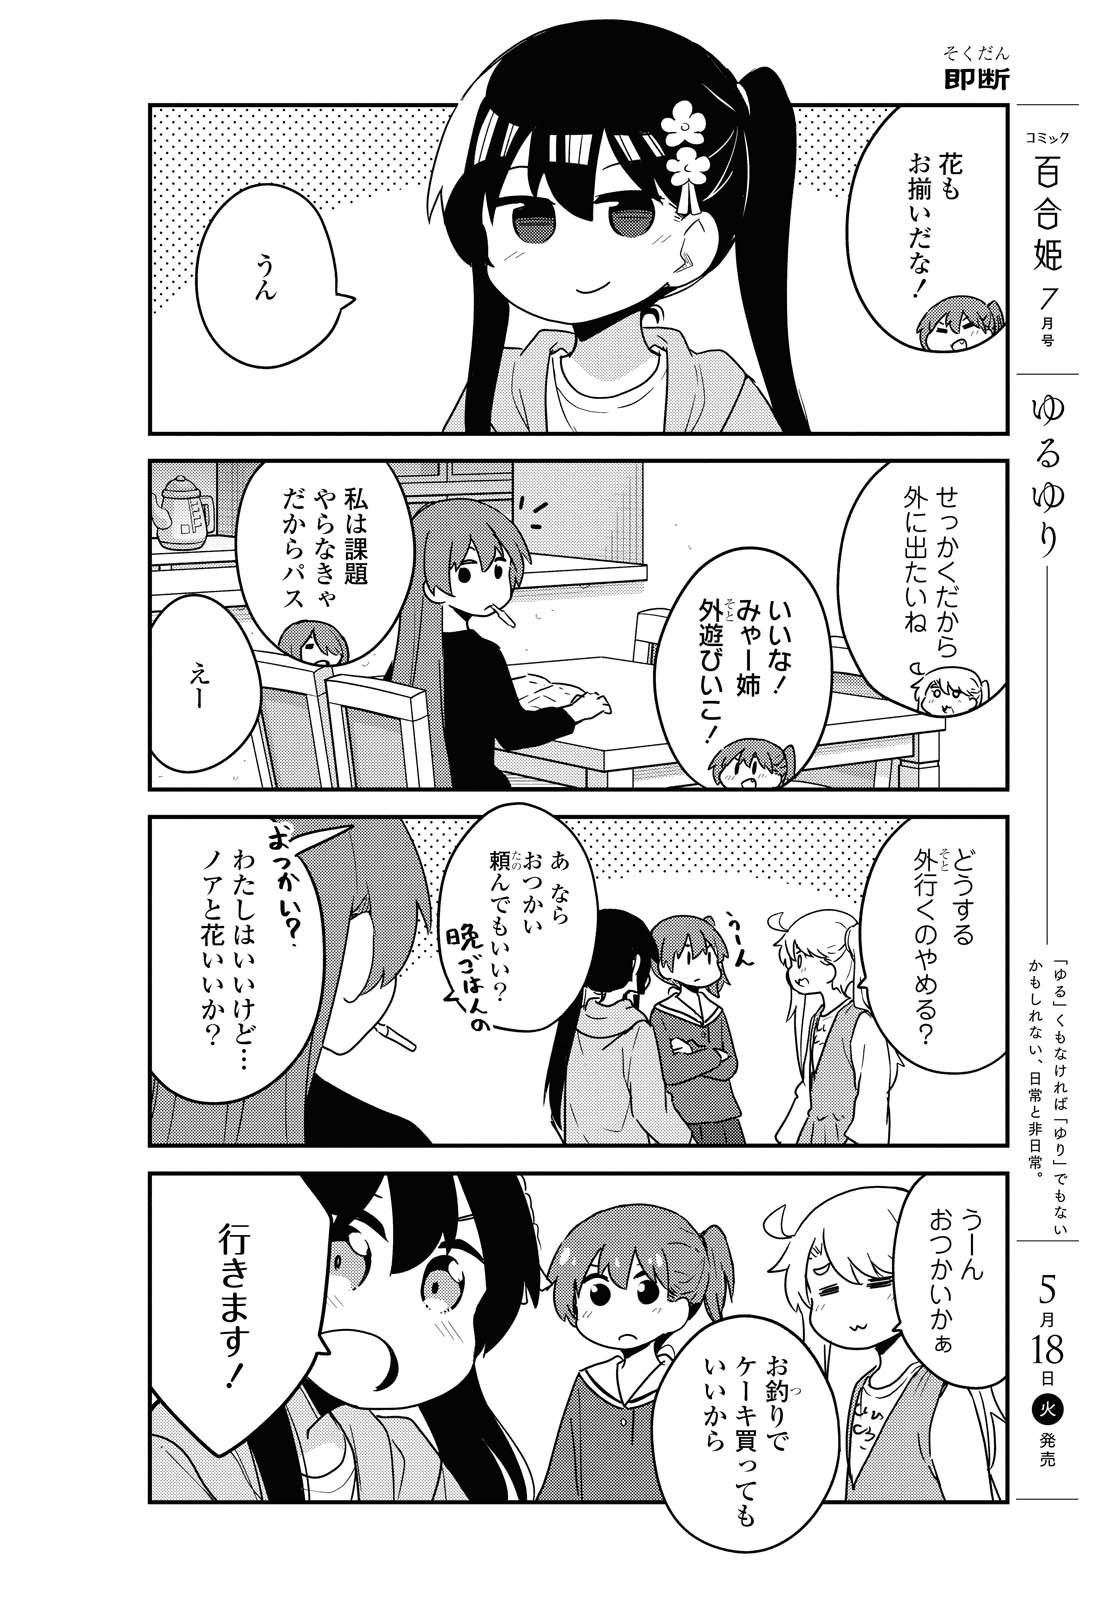 Watashi ni Tenshi ga Maiorita! - Chapter 81 - Page 4